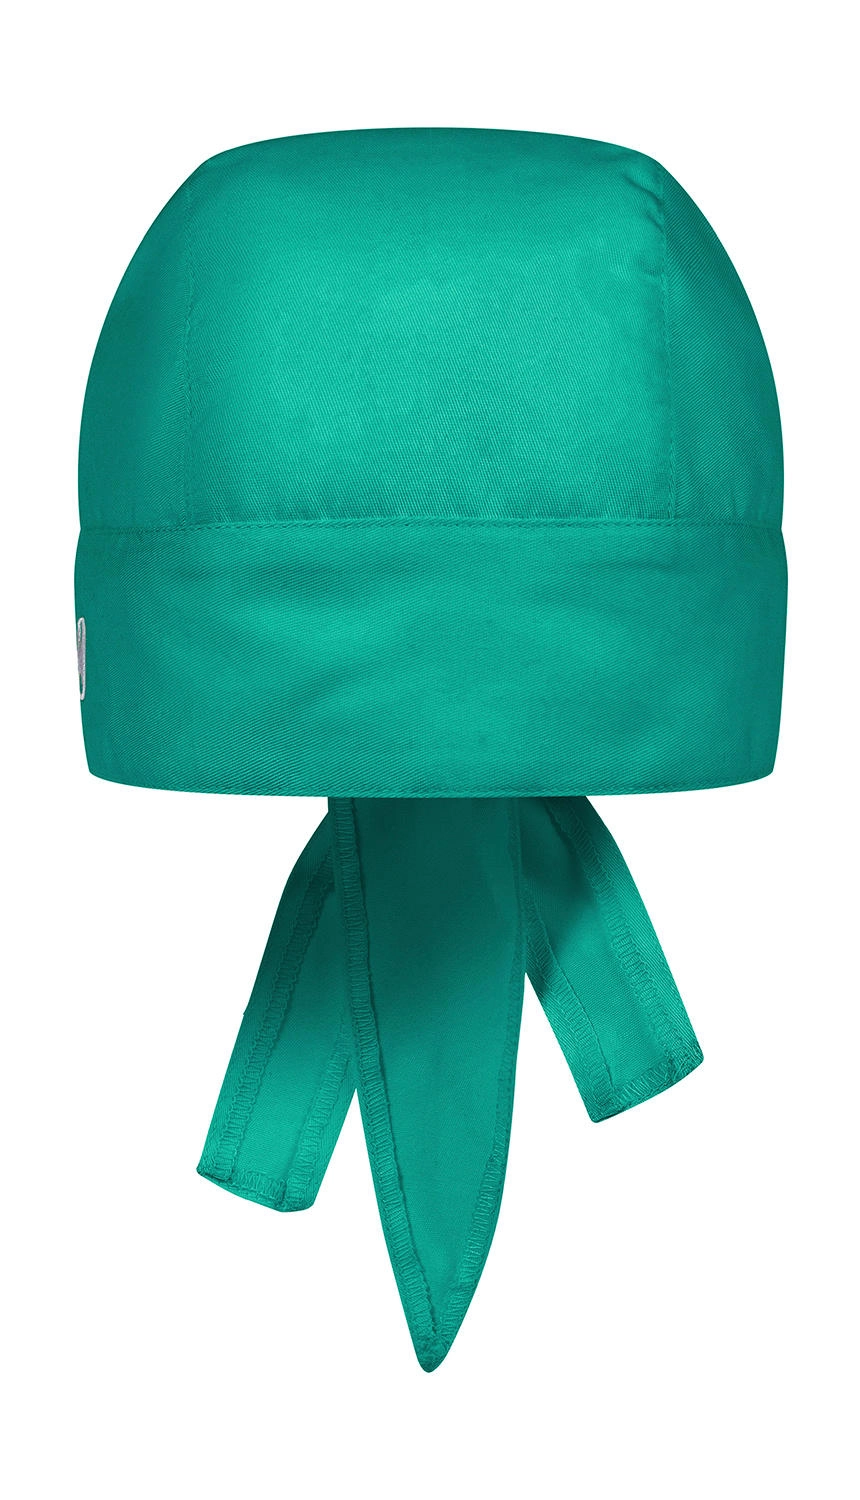 Bandana Essential zum Besticken und Bedrucken in der Farbe Emerald Green mit Ihren Logo, Schriftzug oder Motiv.